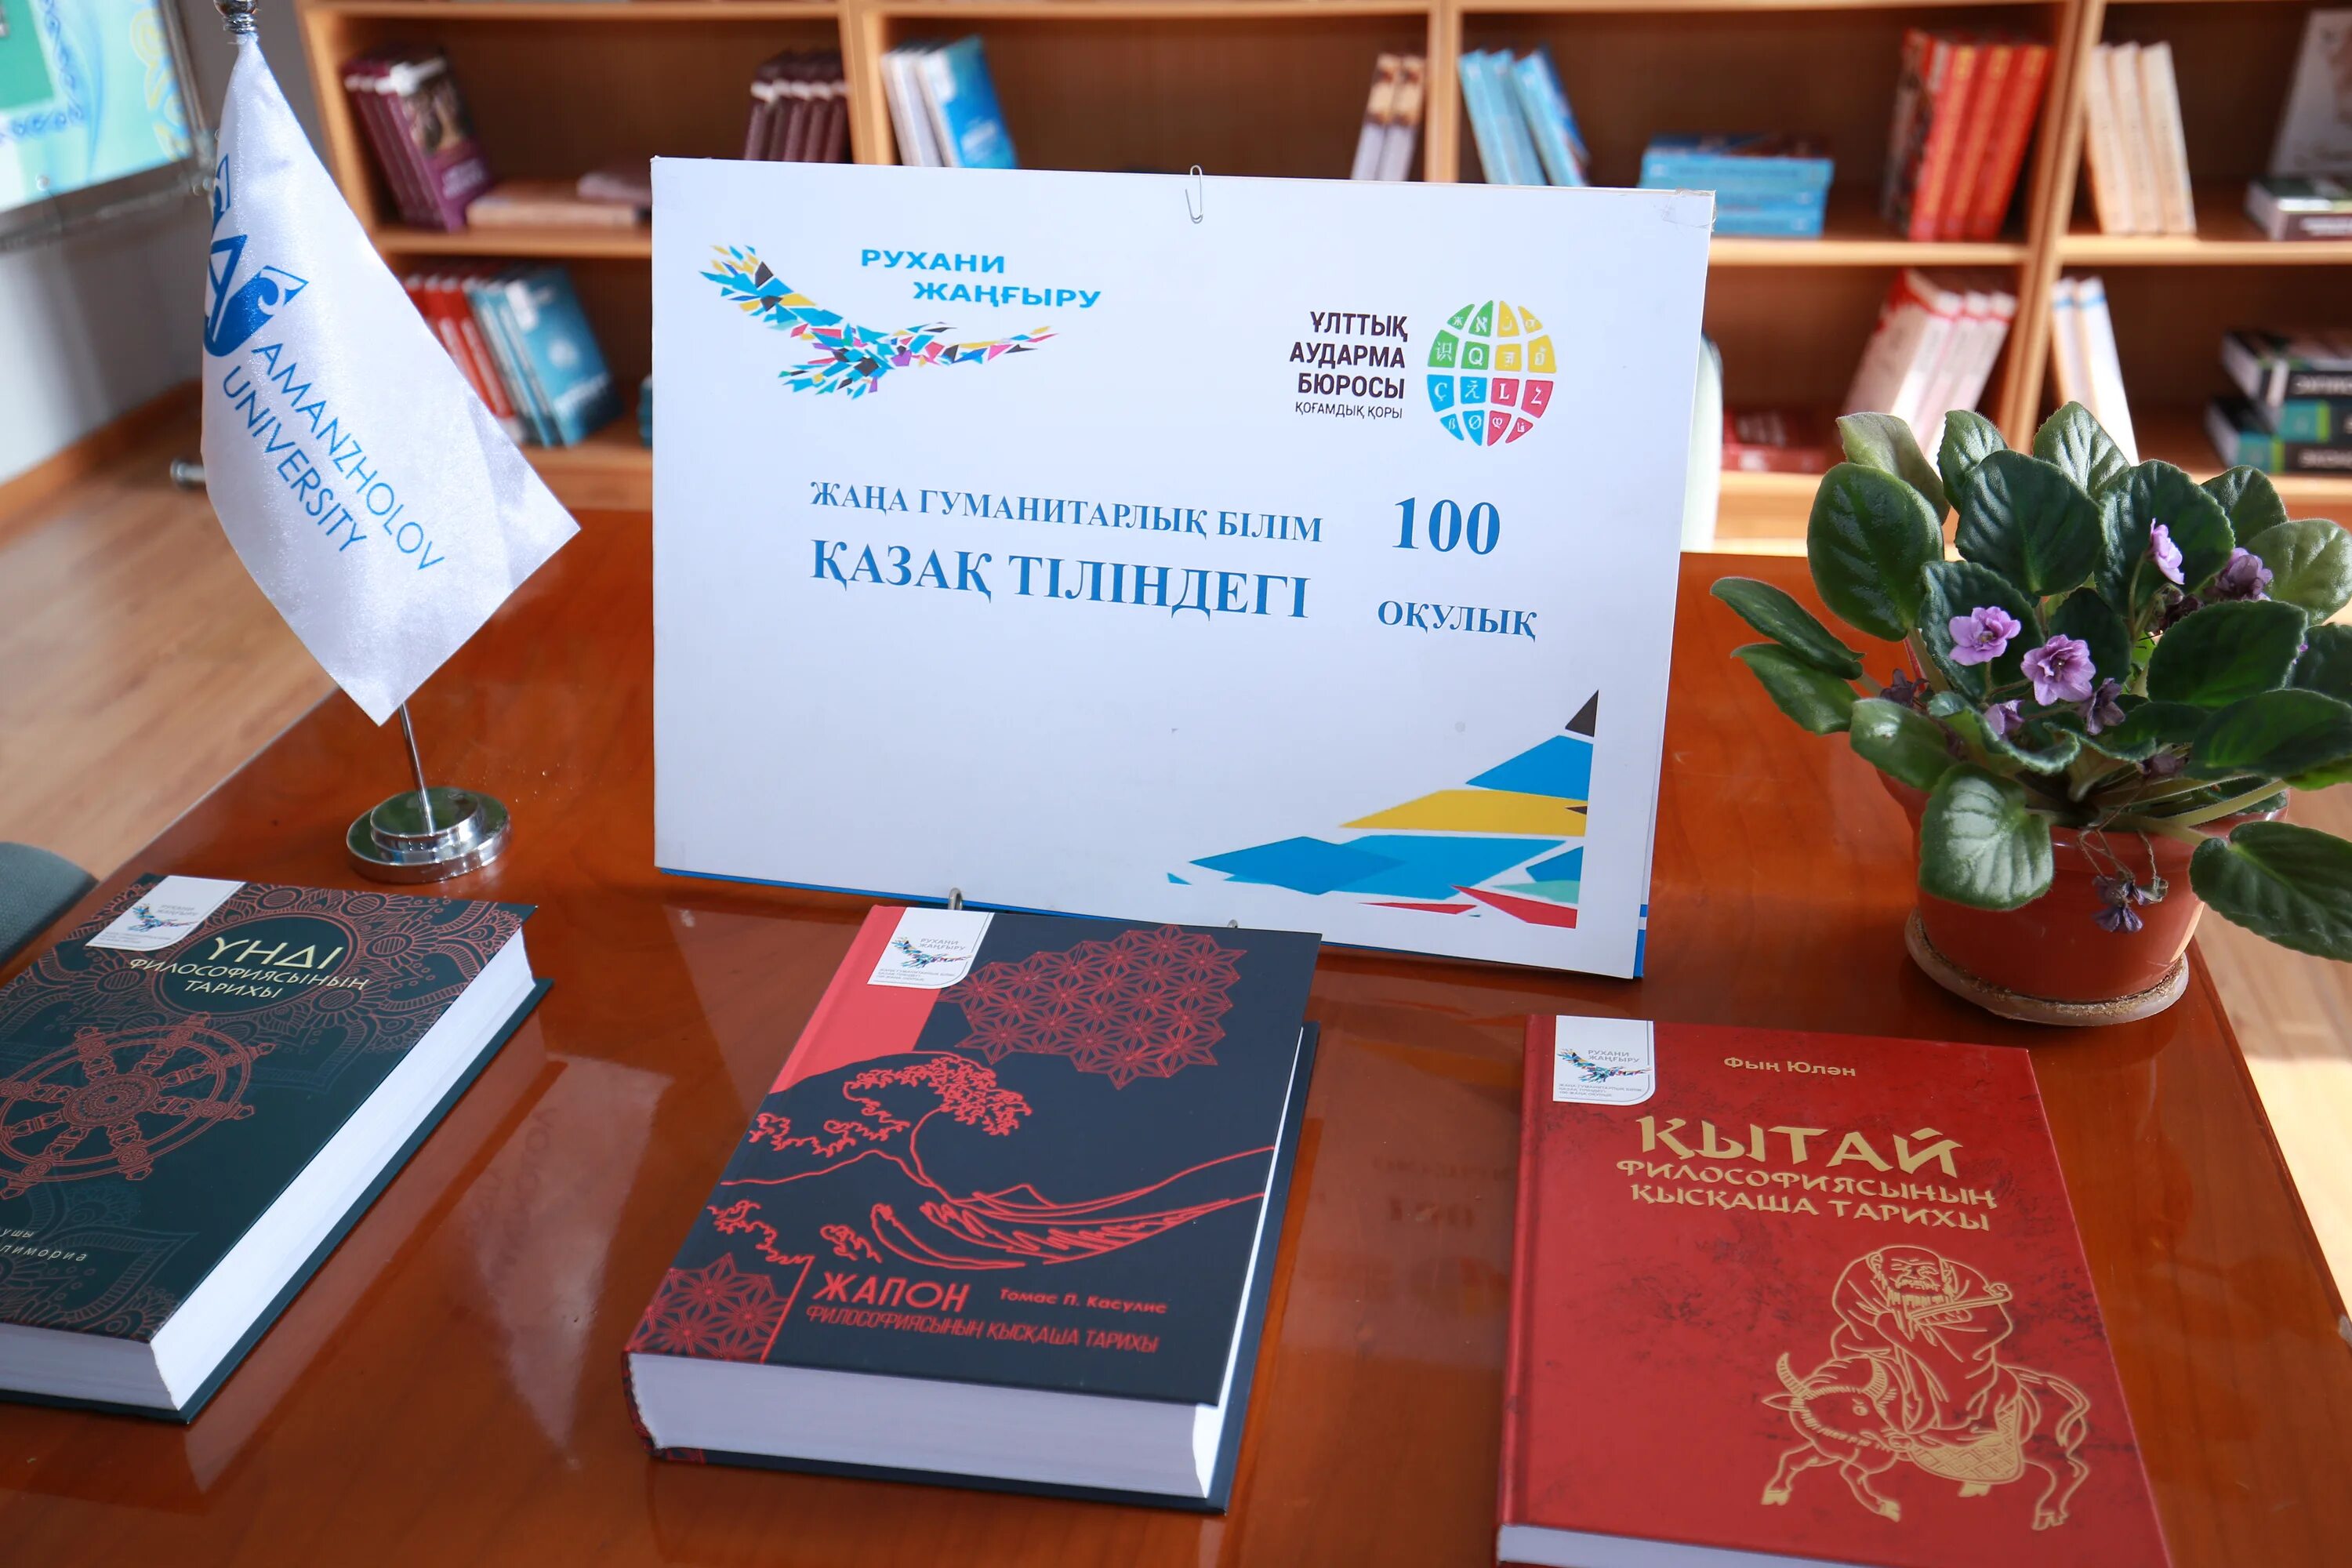 100 новых учебников. Книги на казахском языке. Учебник казахского языка. Мероприятие по казахскому языку и литературе. Рухани жаңғыру 100 книг.